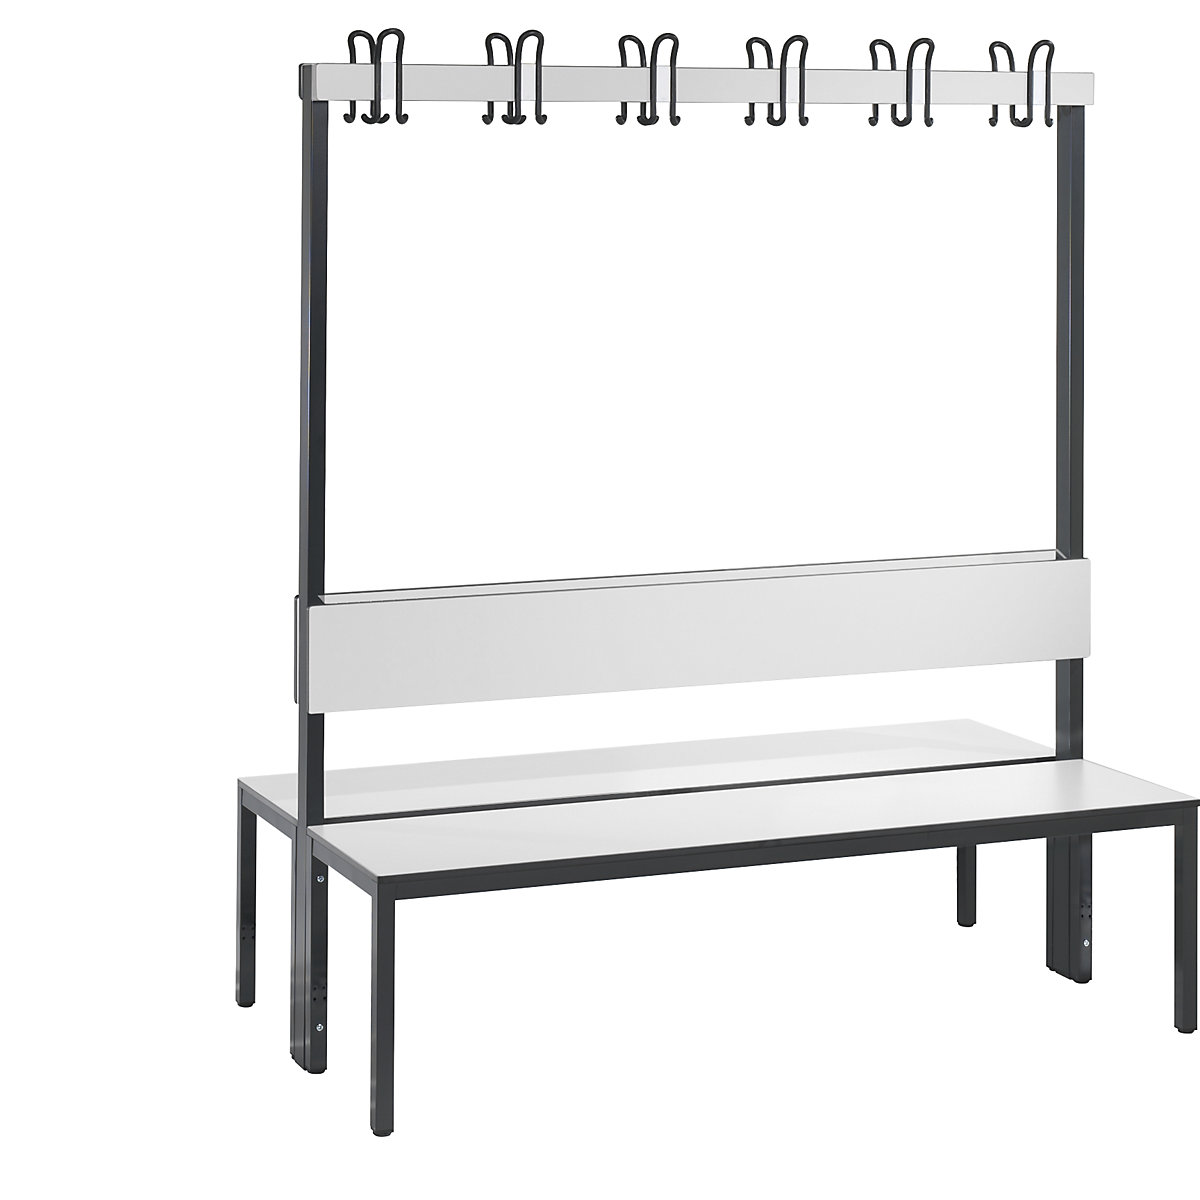 Banc de vestiaire BASIC PLUS double face – C+P, surface de l'assise en stratifié HPL, barre à patères, longueur 1500 mm, blanc-8